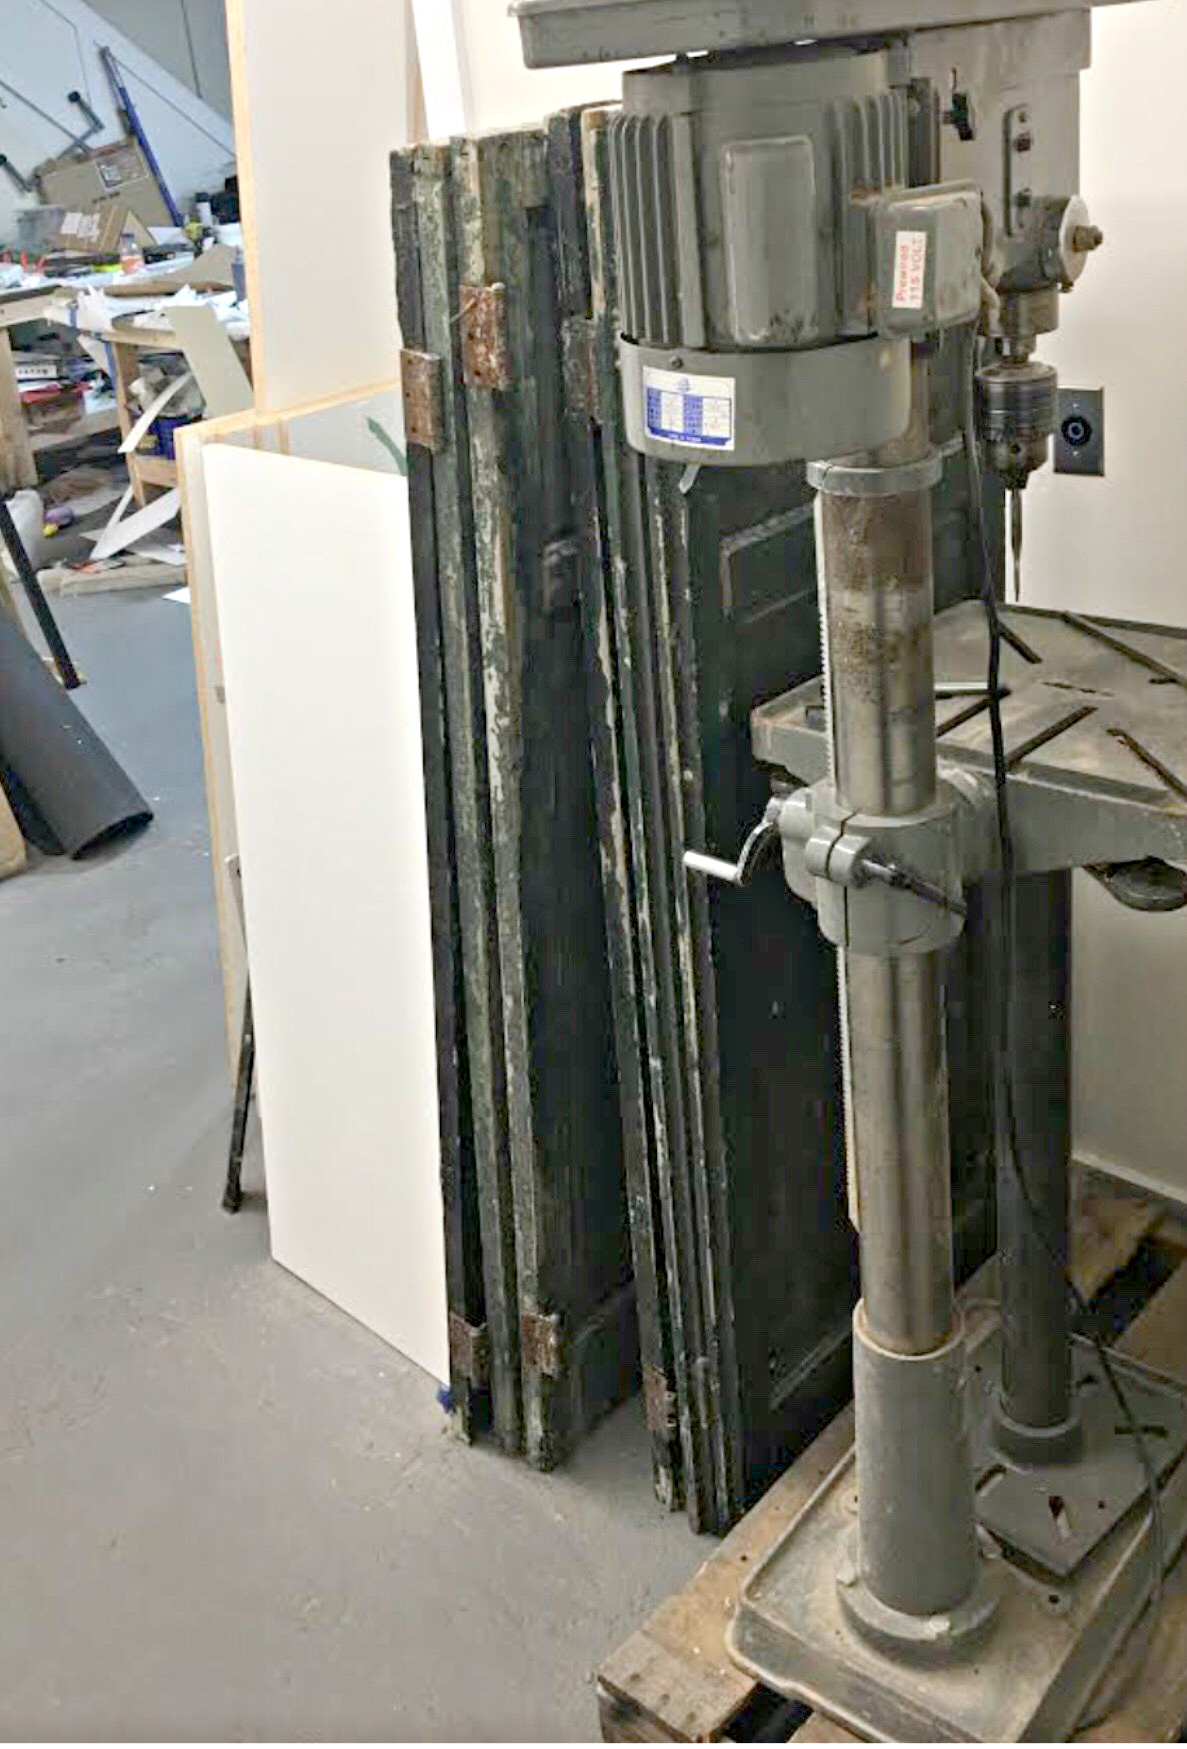 Drill Press (used) Item # UFE-638a (New Jersey)